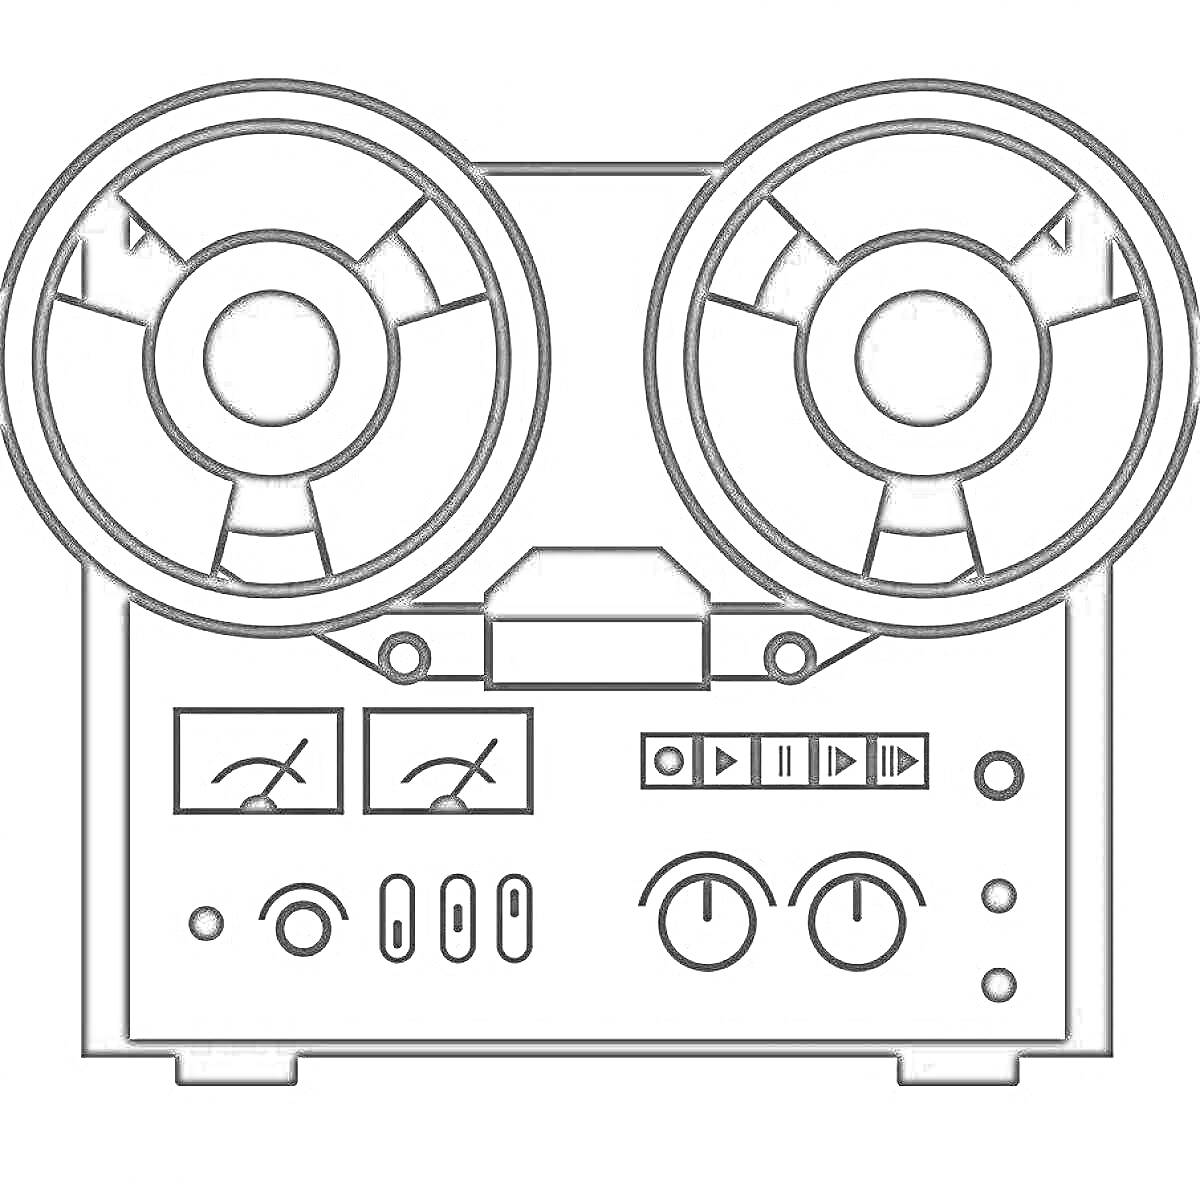 Раскраска Магнитофон с катушками, индикаторами, кнопками управления и регуляторами